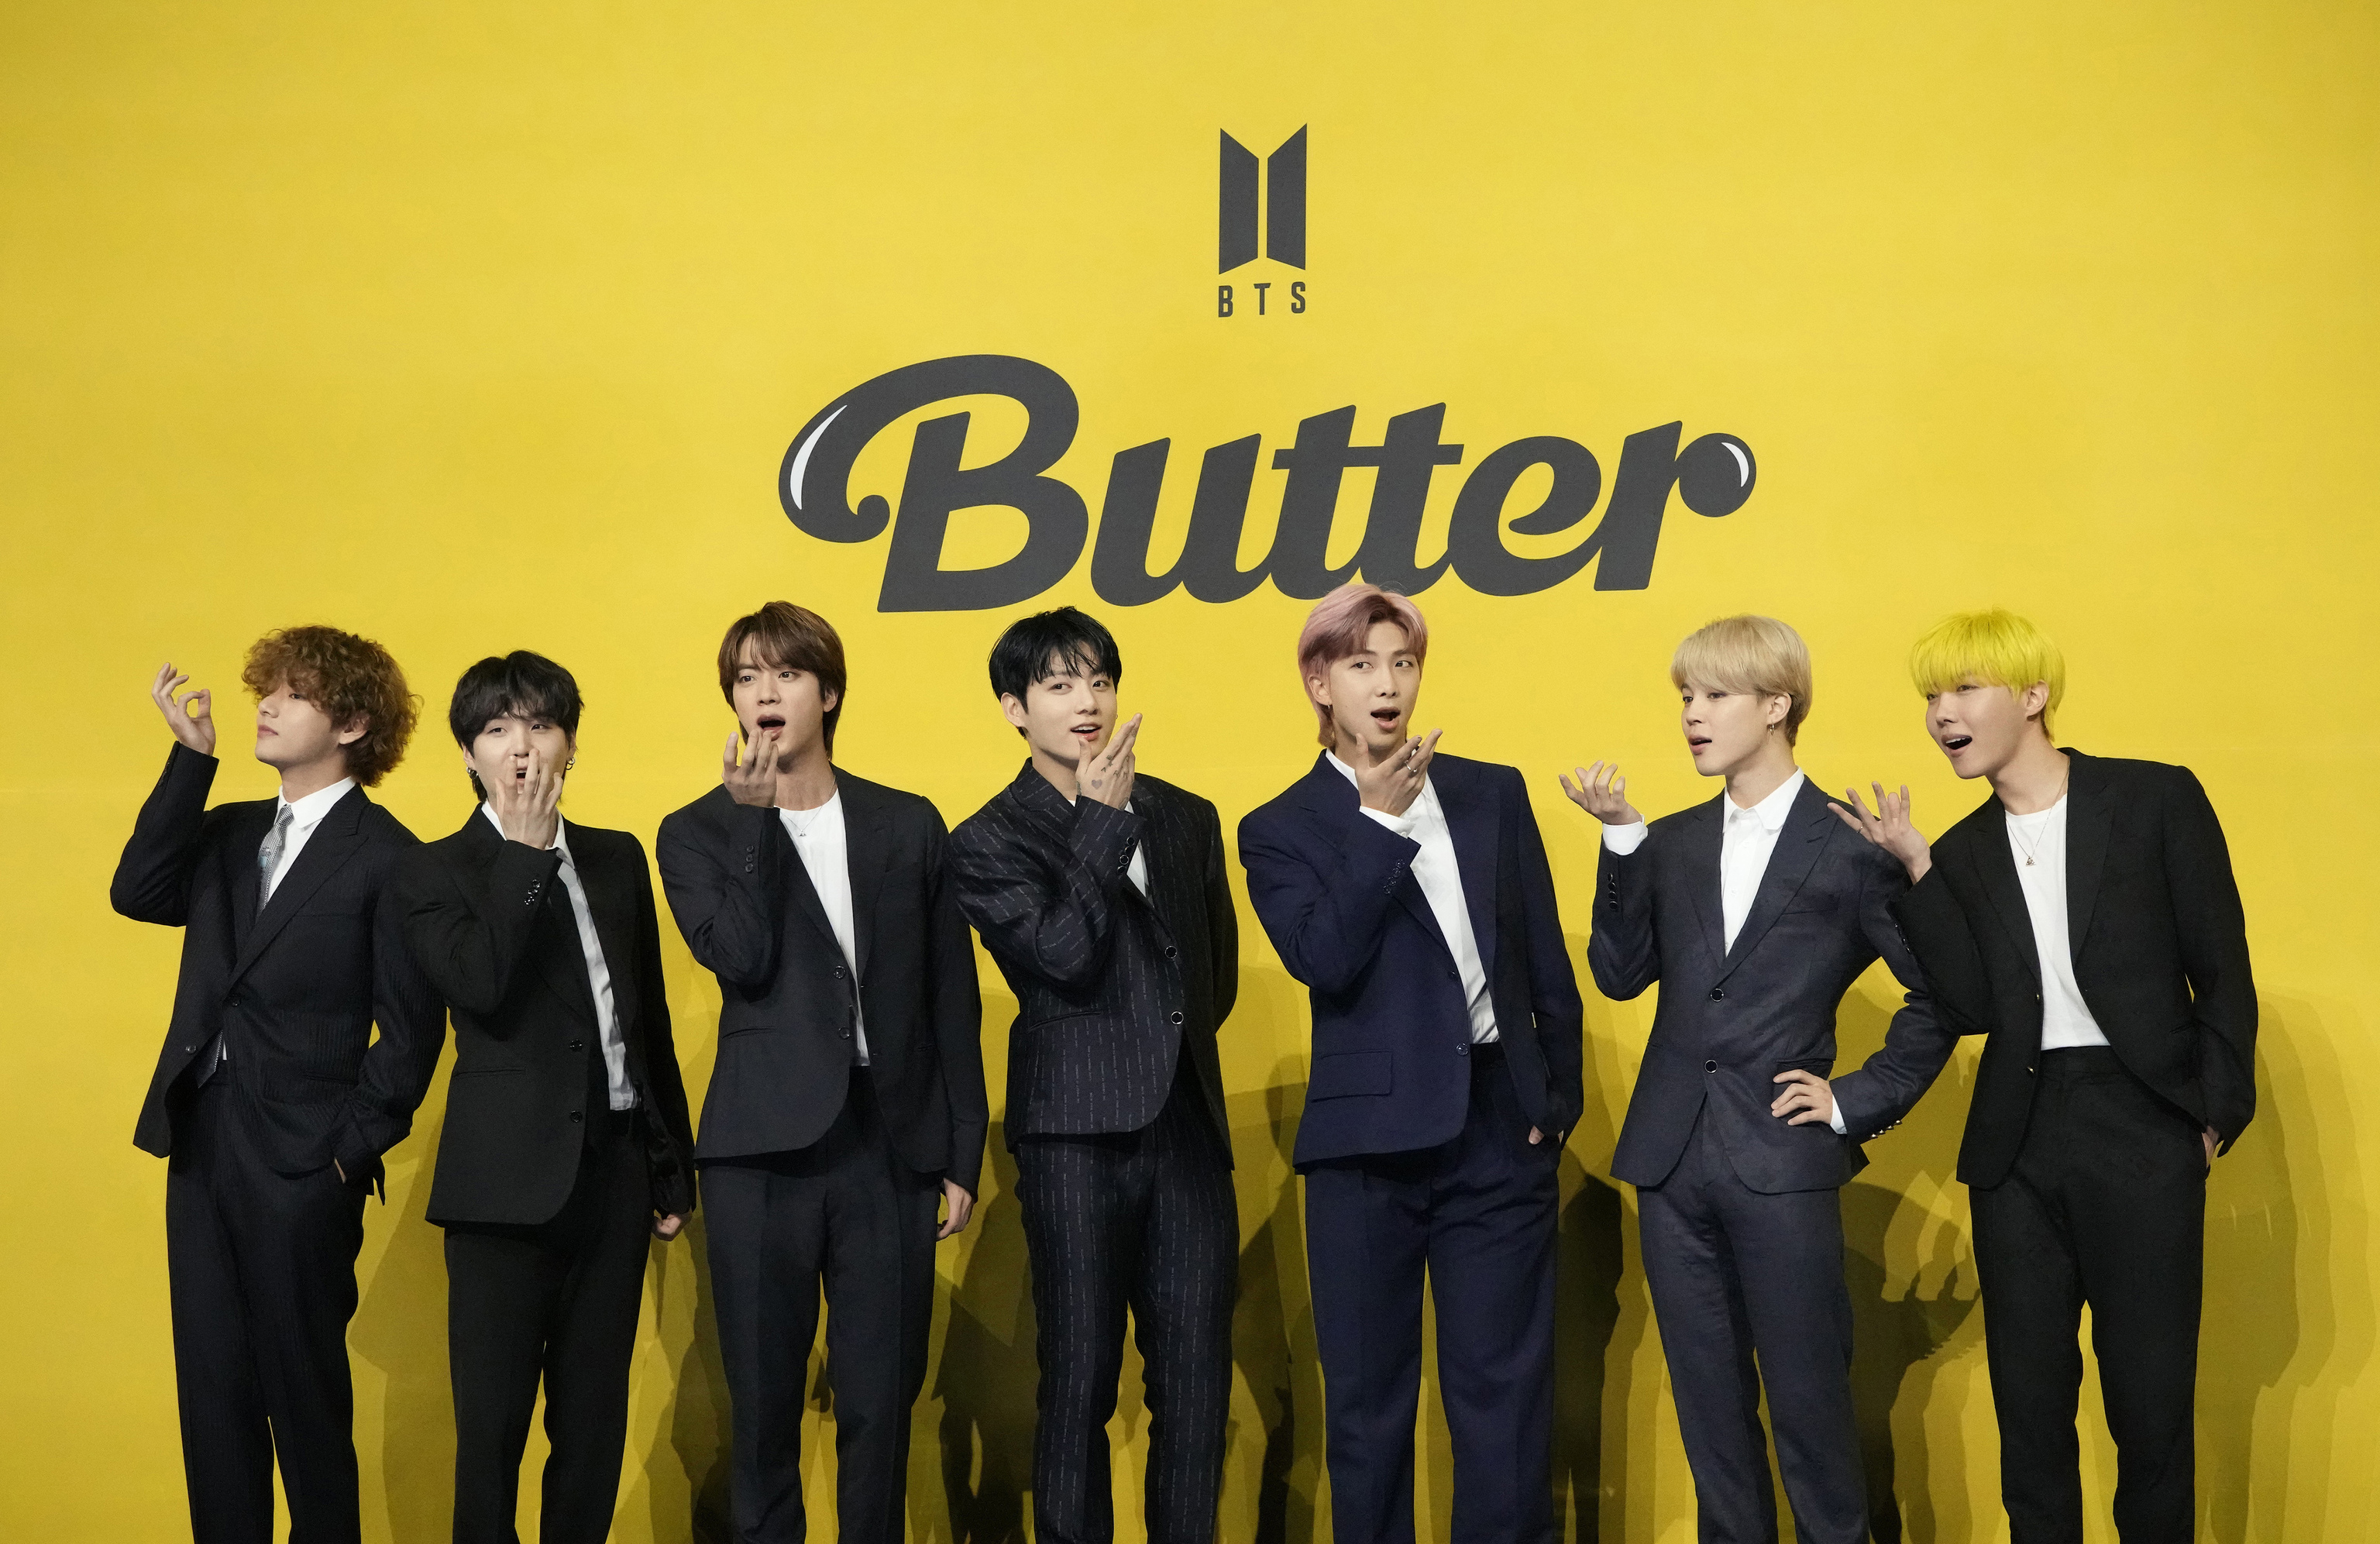 Los miembros de la banda surcoreana de K-pop BTS, V, SUGA, JIN, Jung Kook, RM, Jimin y j-hope, de izquierda a derecha, posan para los fotgrafos antes de una conferencia de prensa para presentar su nuevo single "Butter" en Sel, Corea del Sur, el 21 de mayo de 2021. Los miembros de la banda de K-pop BTS cumplirn con sus deberes militares obligatorios bajo la ley surcoreana, dijo su compaa de gestin el lunes 17 de octubre de 2022, poniendo fin a un debate sobre la exencin de ellos debido a sus logros artsticos.